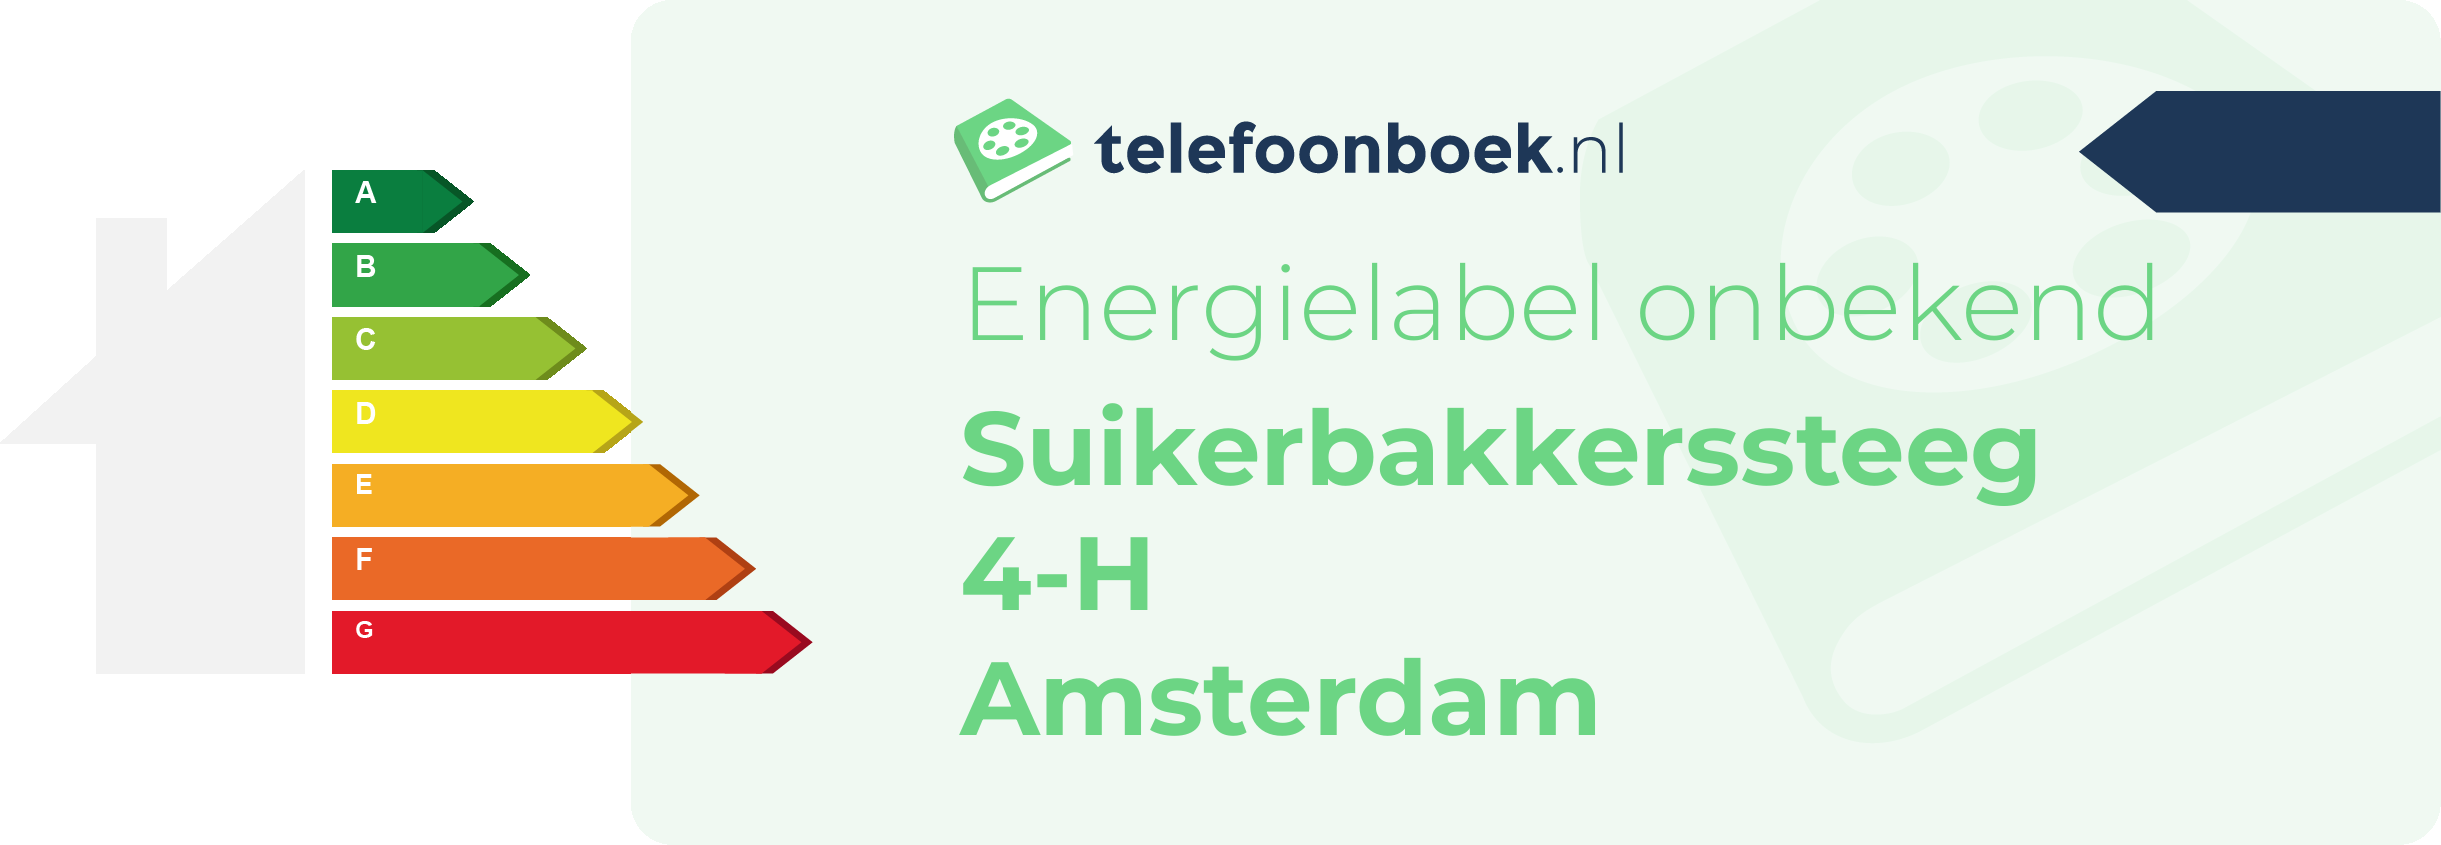 Energielabel Suikerbakkerssteeg 4-H Amsterdam